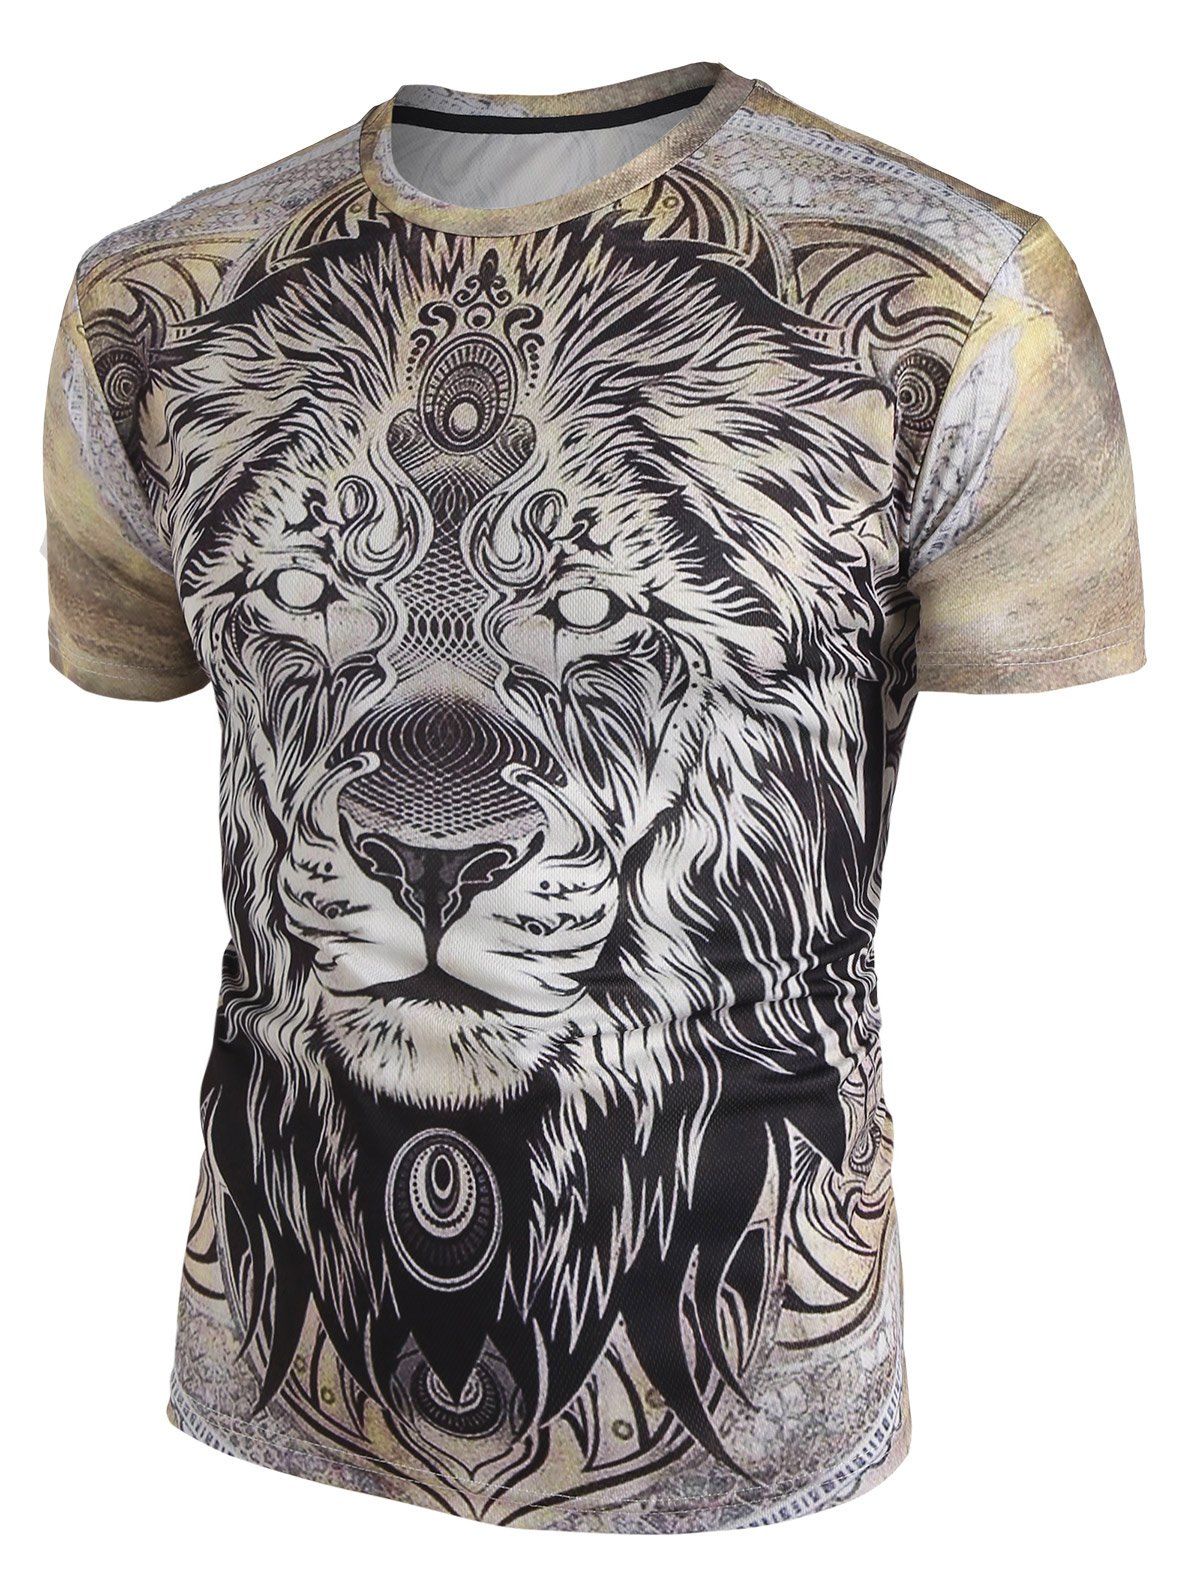 3D Lion Print Short Sleeve T-shirt - multicolor XL